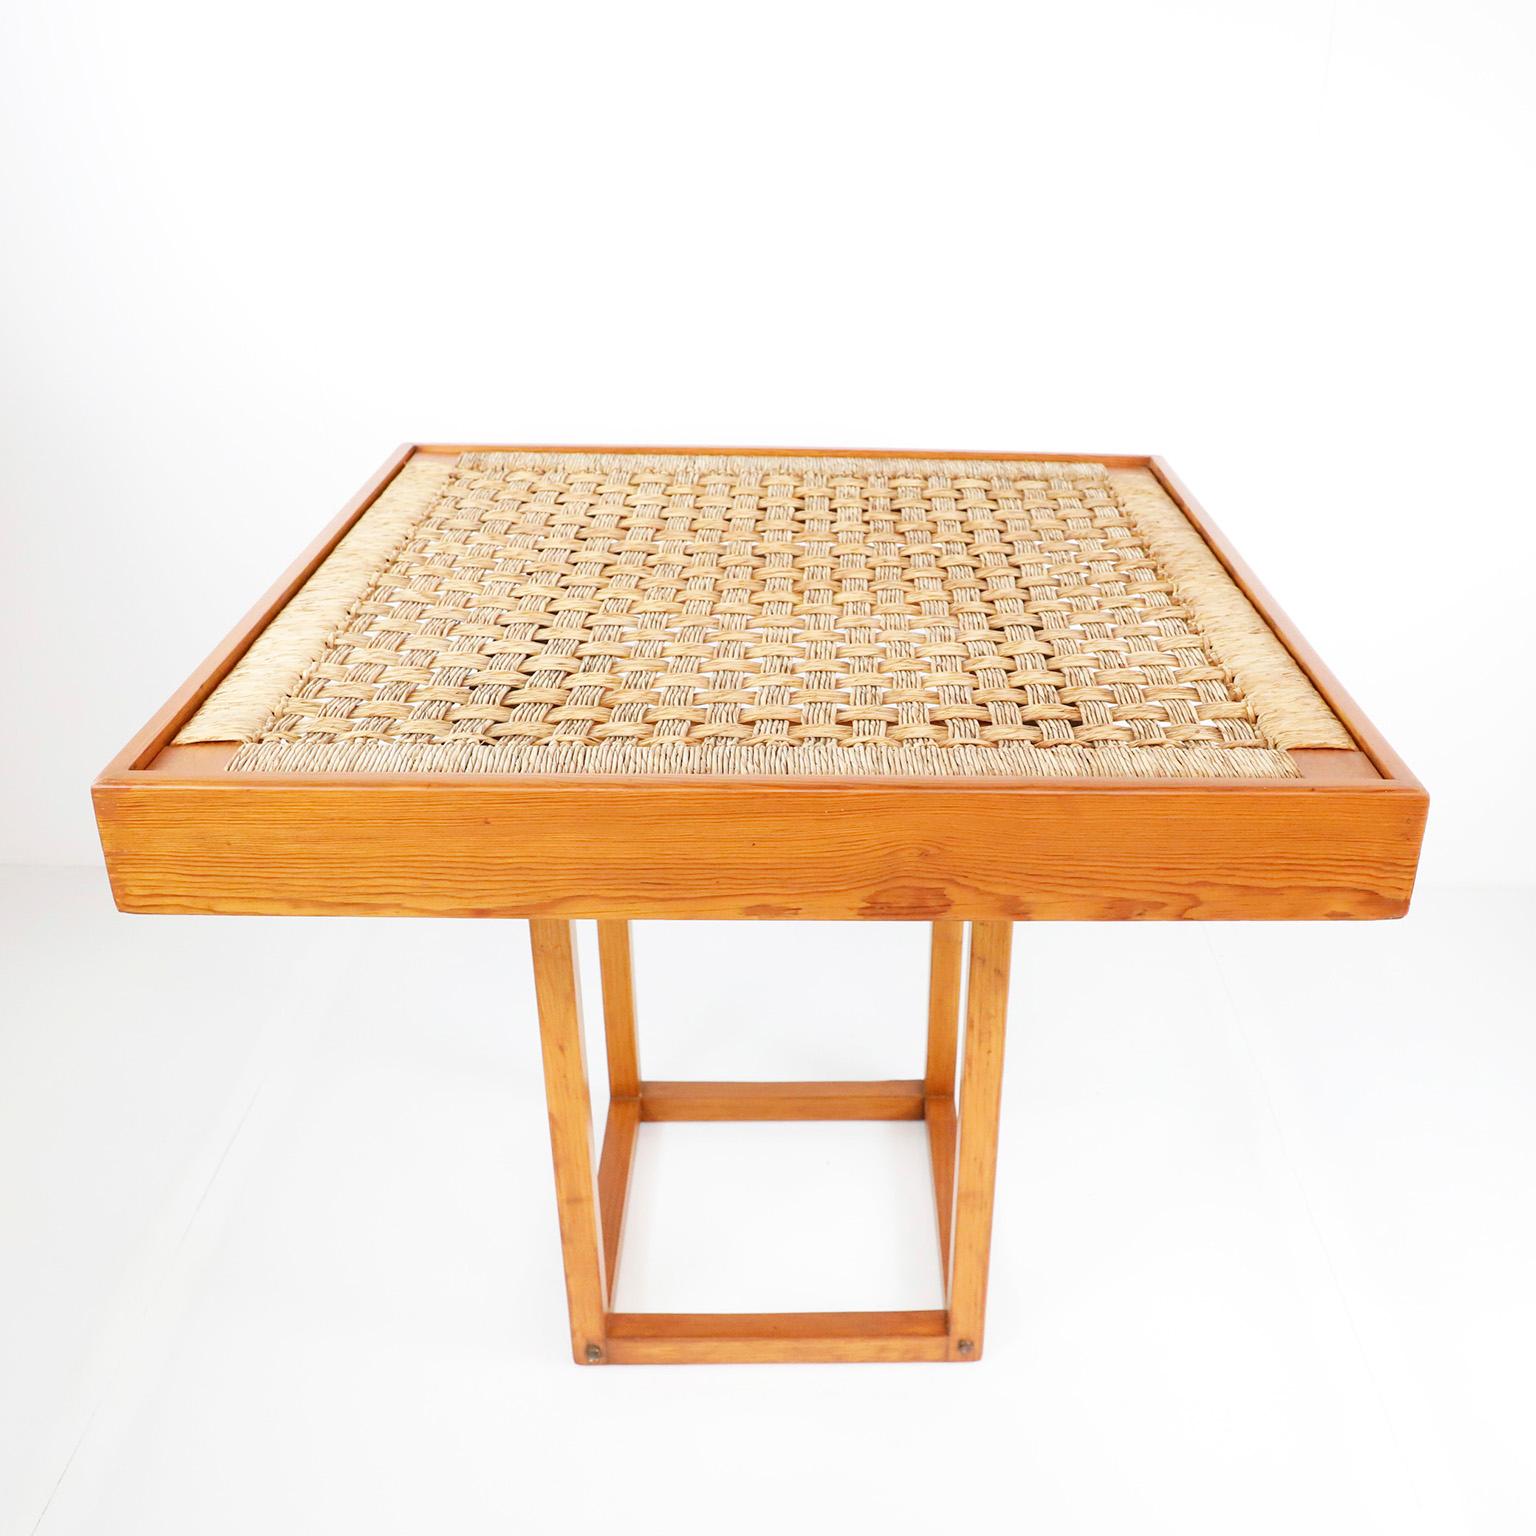 Wir bieten diesen Esstisch an, der durch einfaches Verschieben der Basis in einen Couchtisch umgewandelt werden kann, im Stil von Michael Van Beuren aus Kiefernholz und Palmenkordeln, um 1960. Toller Vintage-Zustand.

Hinweis: Der Tisch erfordert